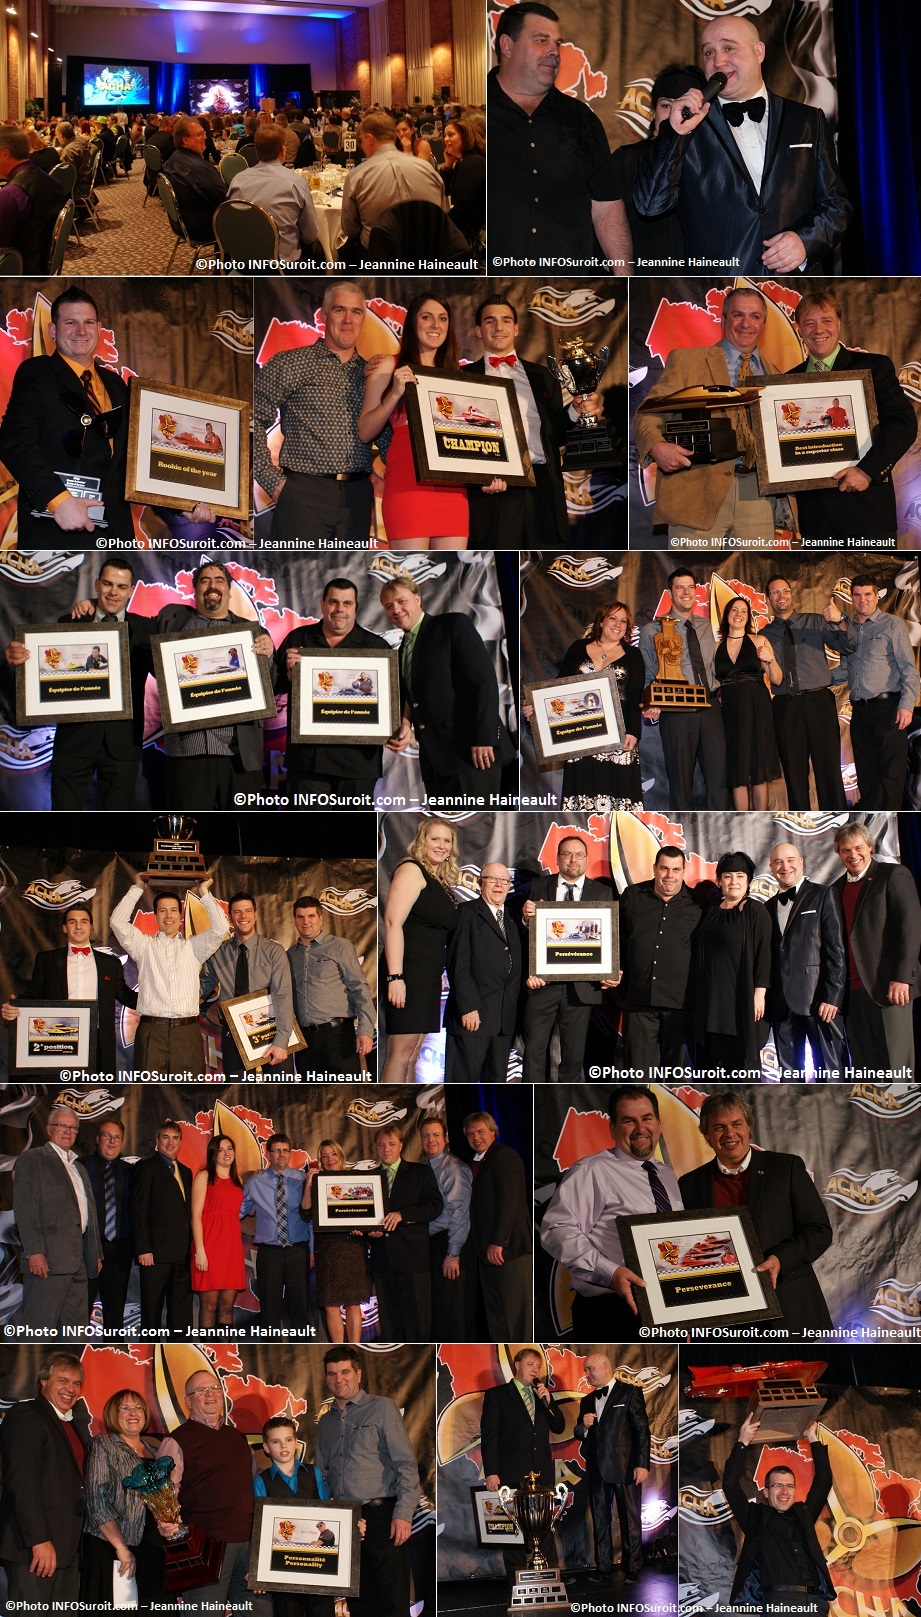 Gala-des-Champions-2013-ACHA-Regates-gagnants-ambiance-Montage-Photos-INFOSuroit_com-Jeannine_Haineault